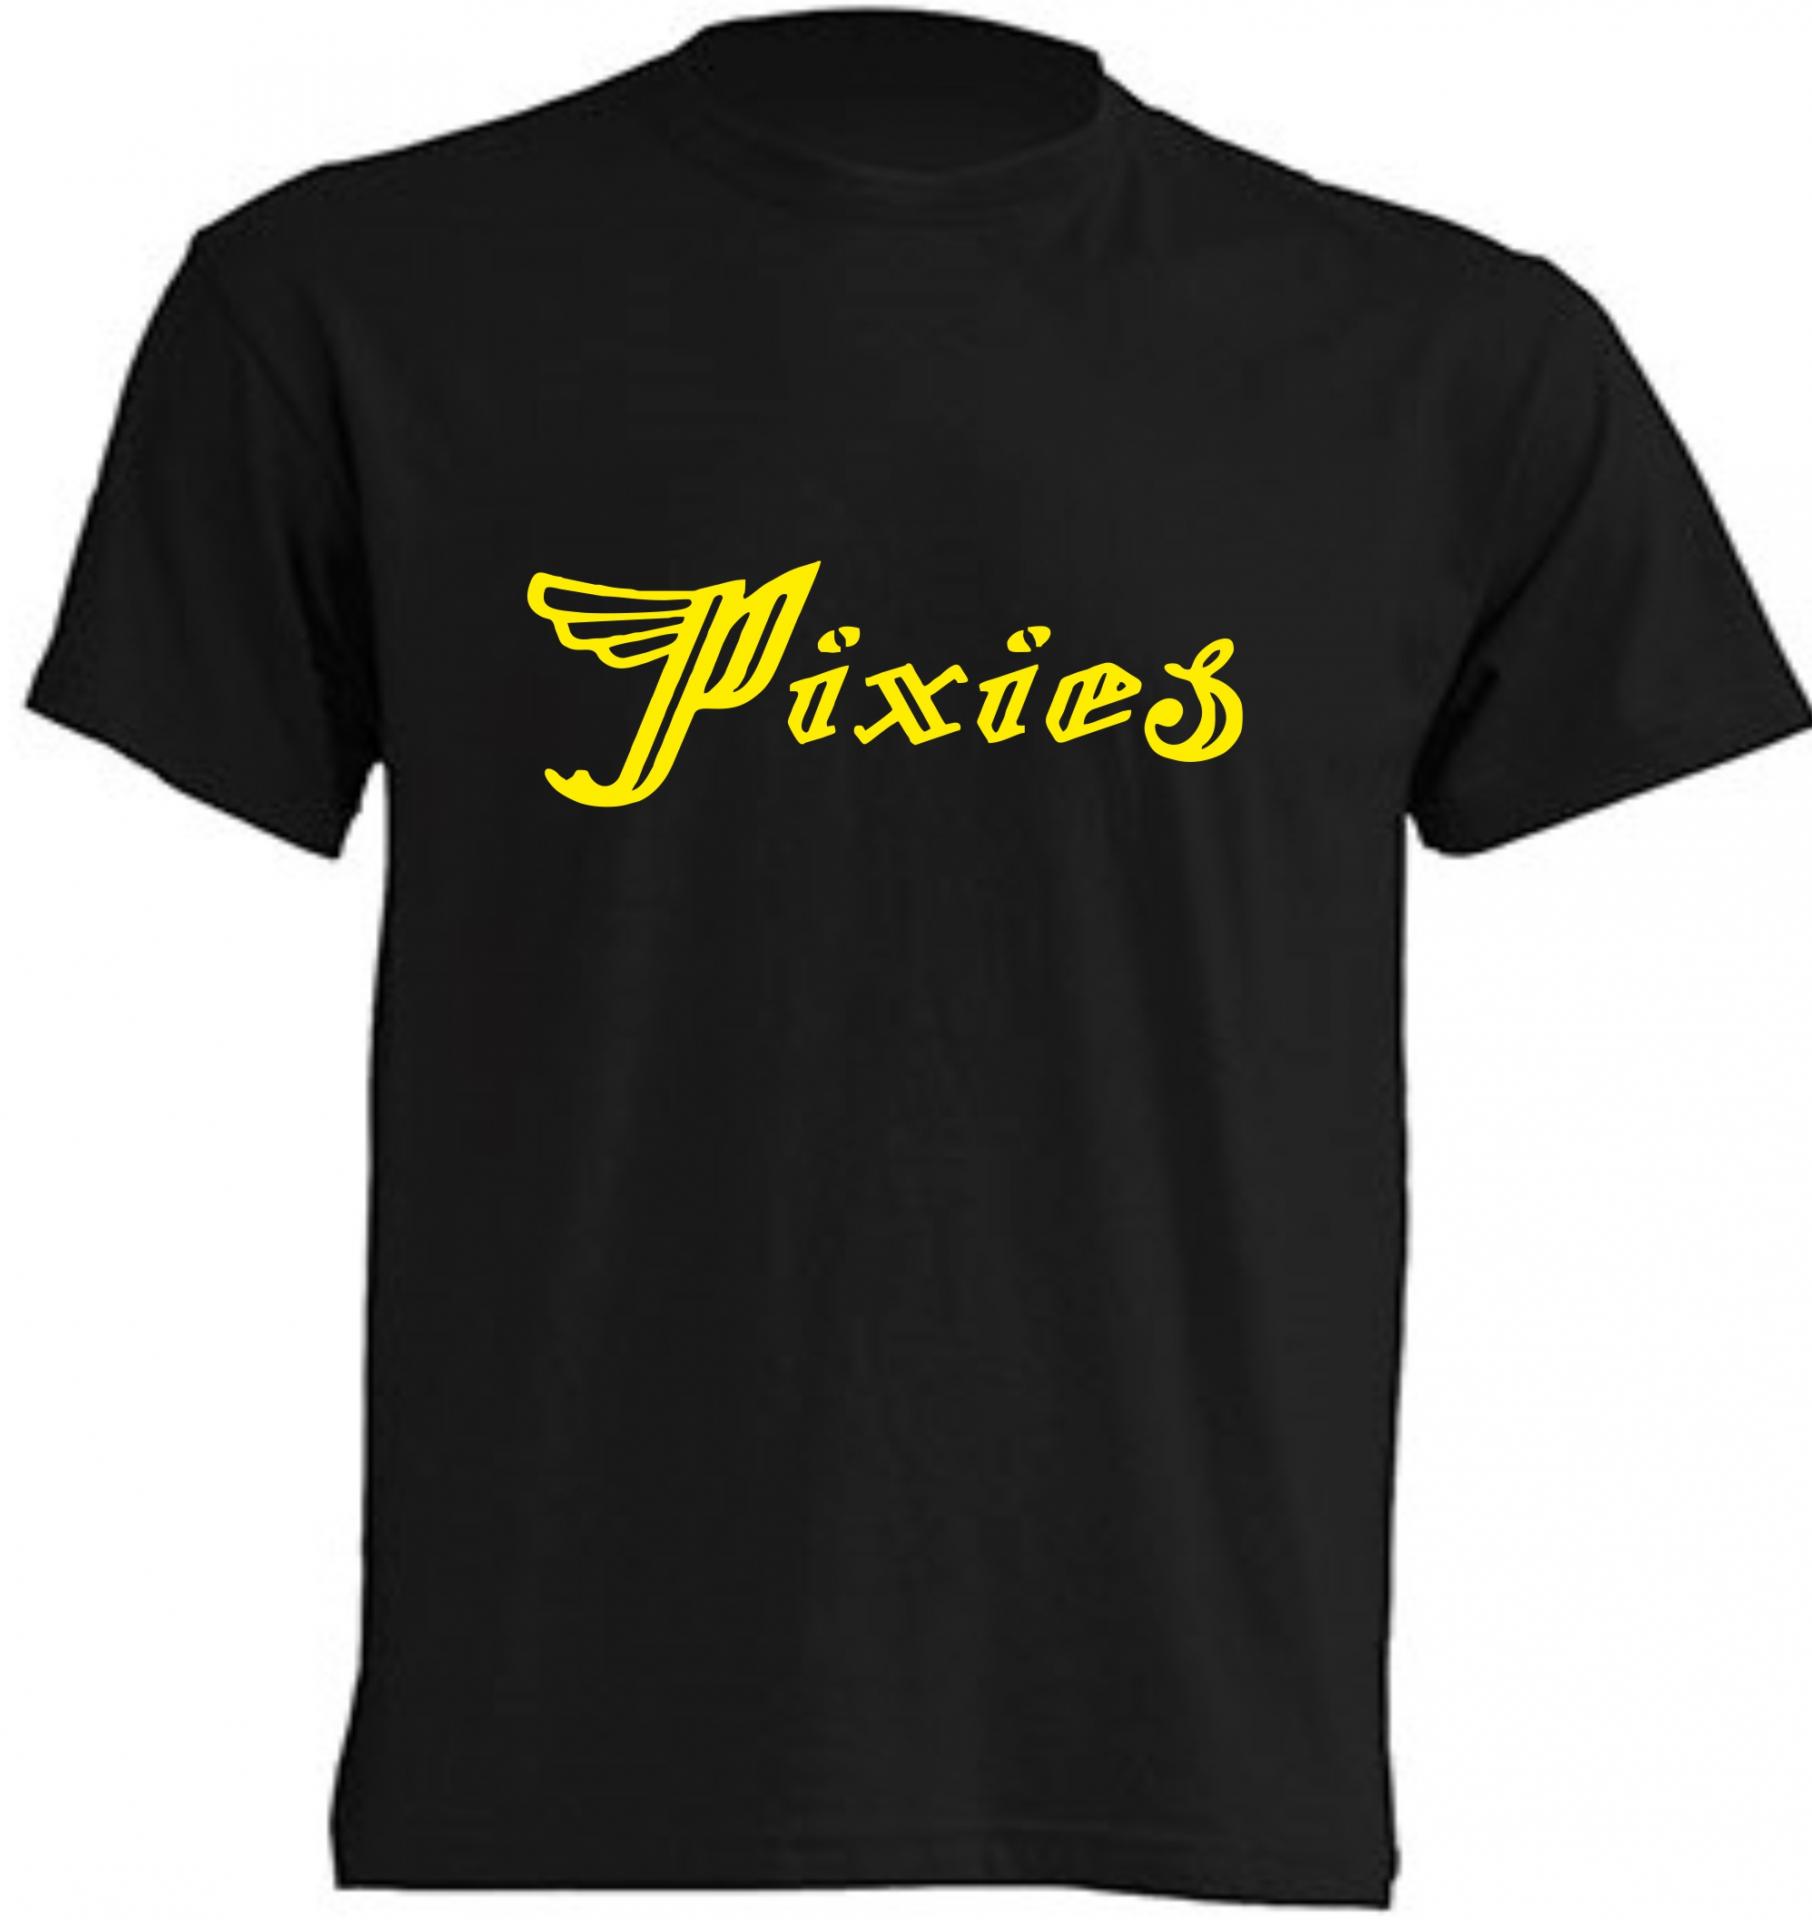 Camiseta Pixies